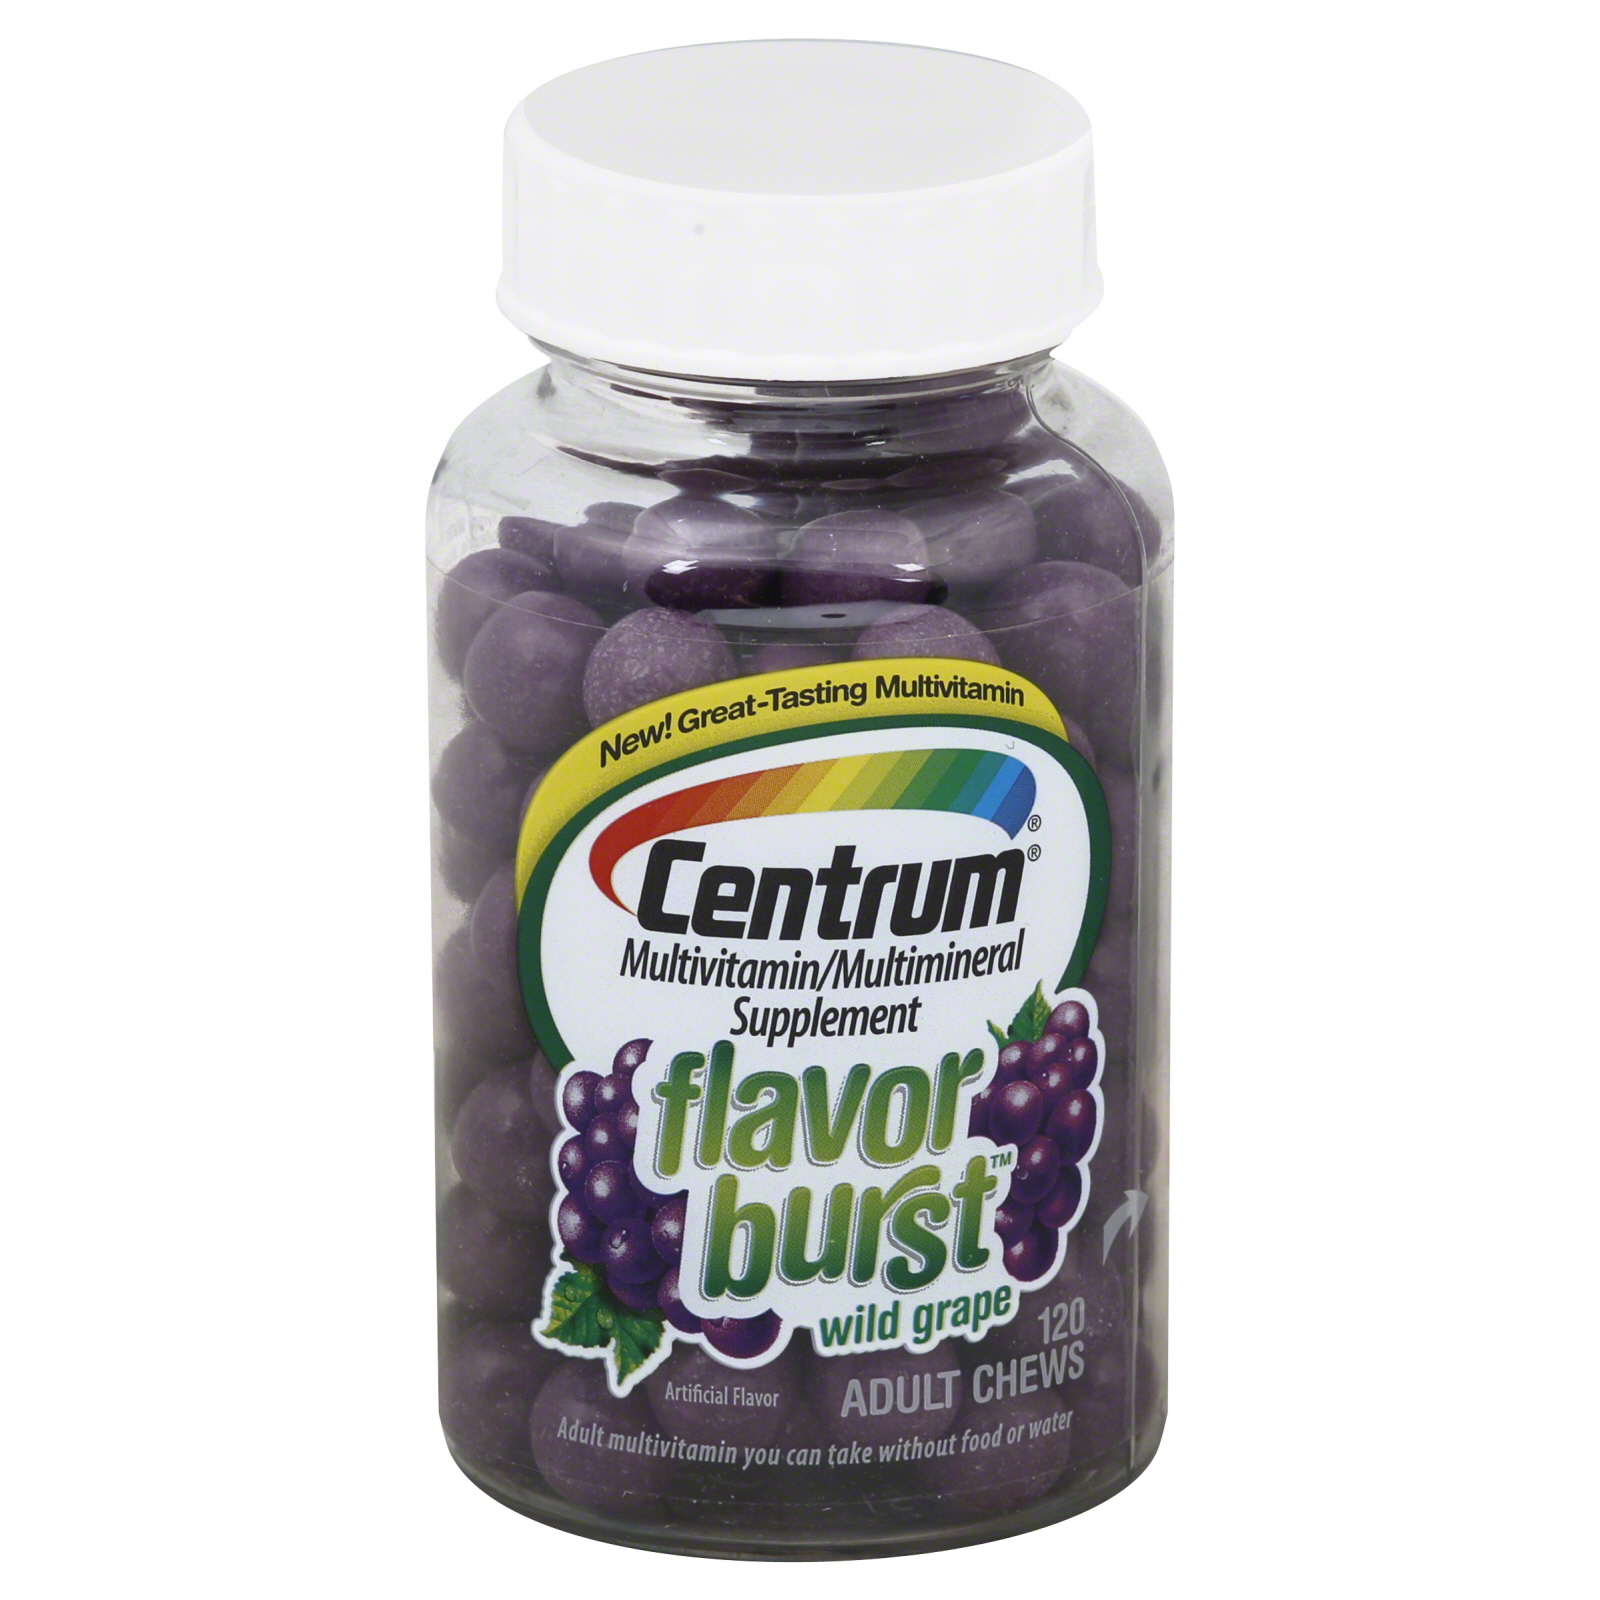 Centrum Flavor Burst Multivitamin Wild Grape Chews